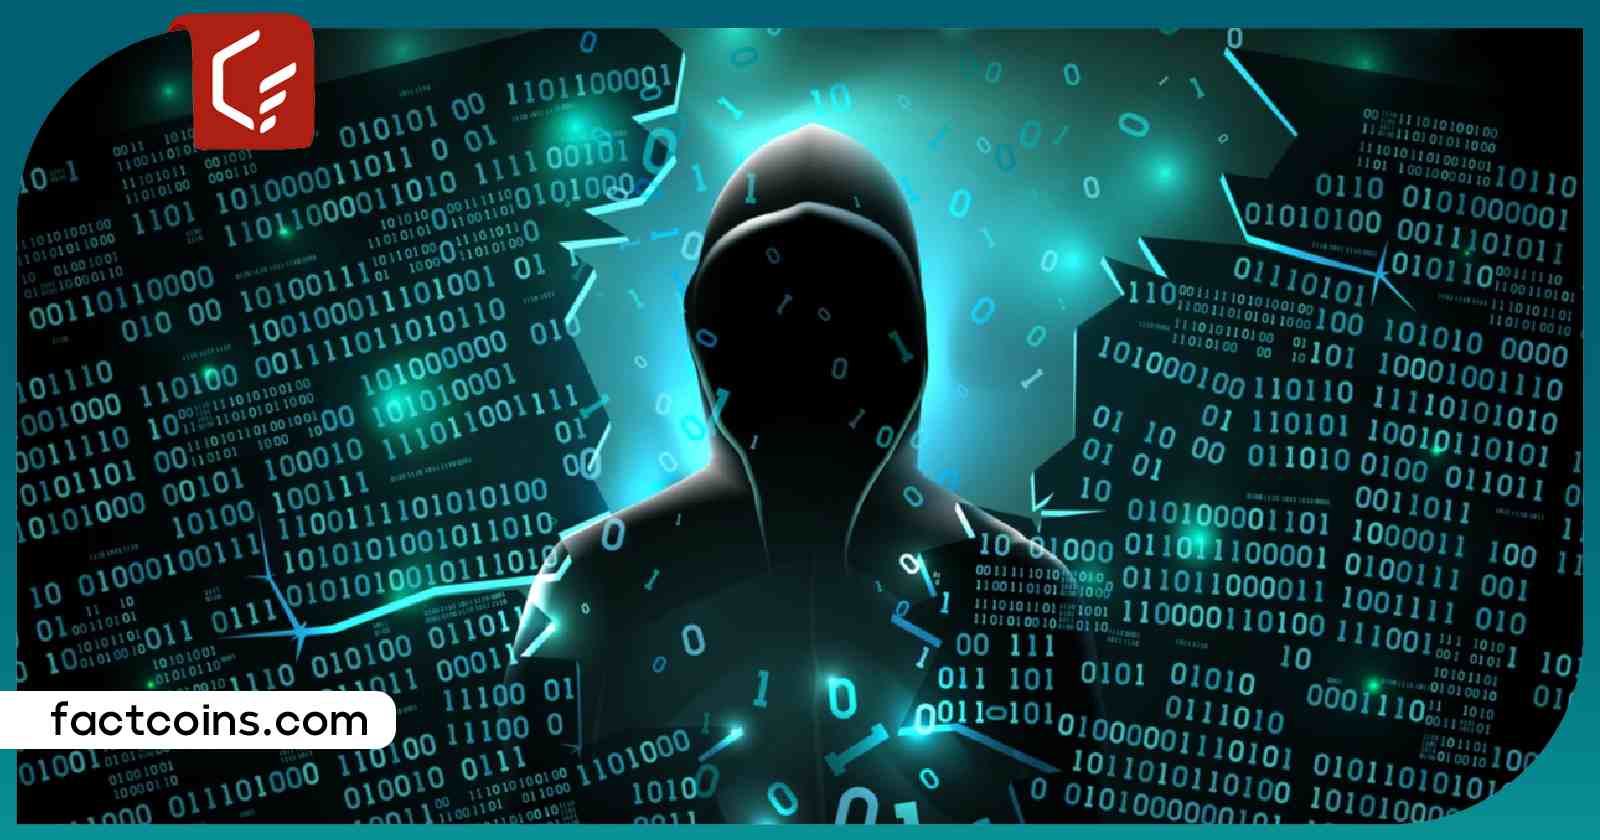 حمله هکری به پروتکل هوپ فایننس؛ ۲ میلیون دلار سرمایه به سرقت رفت